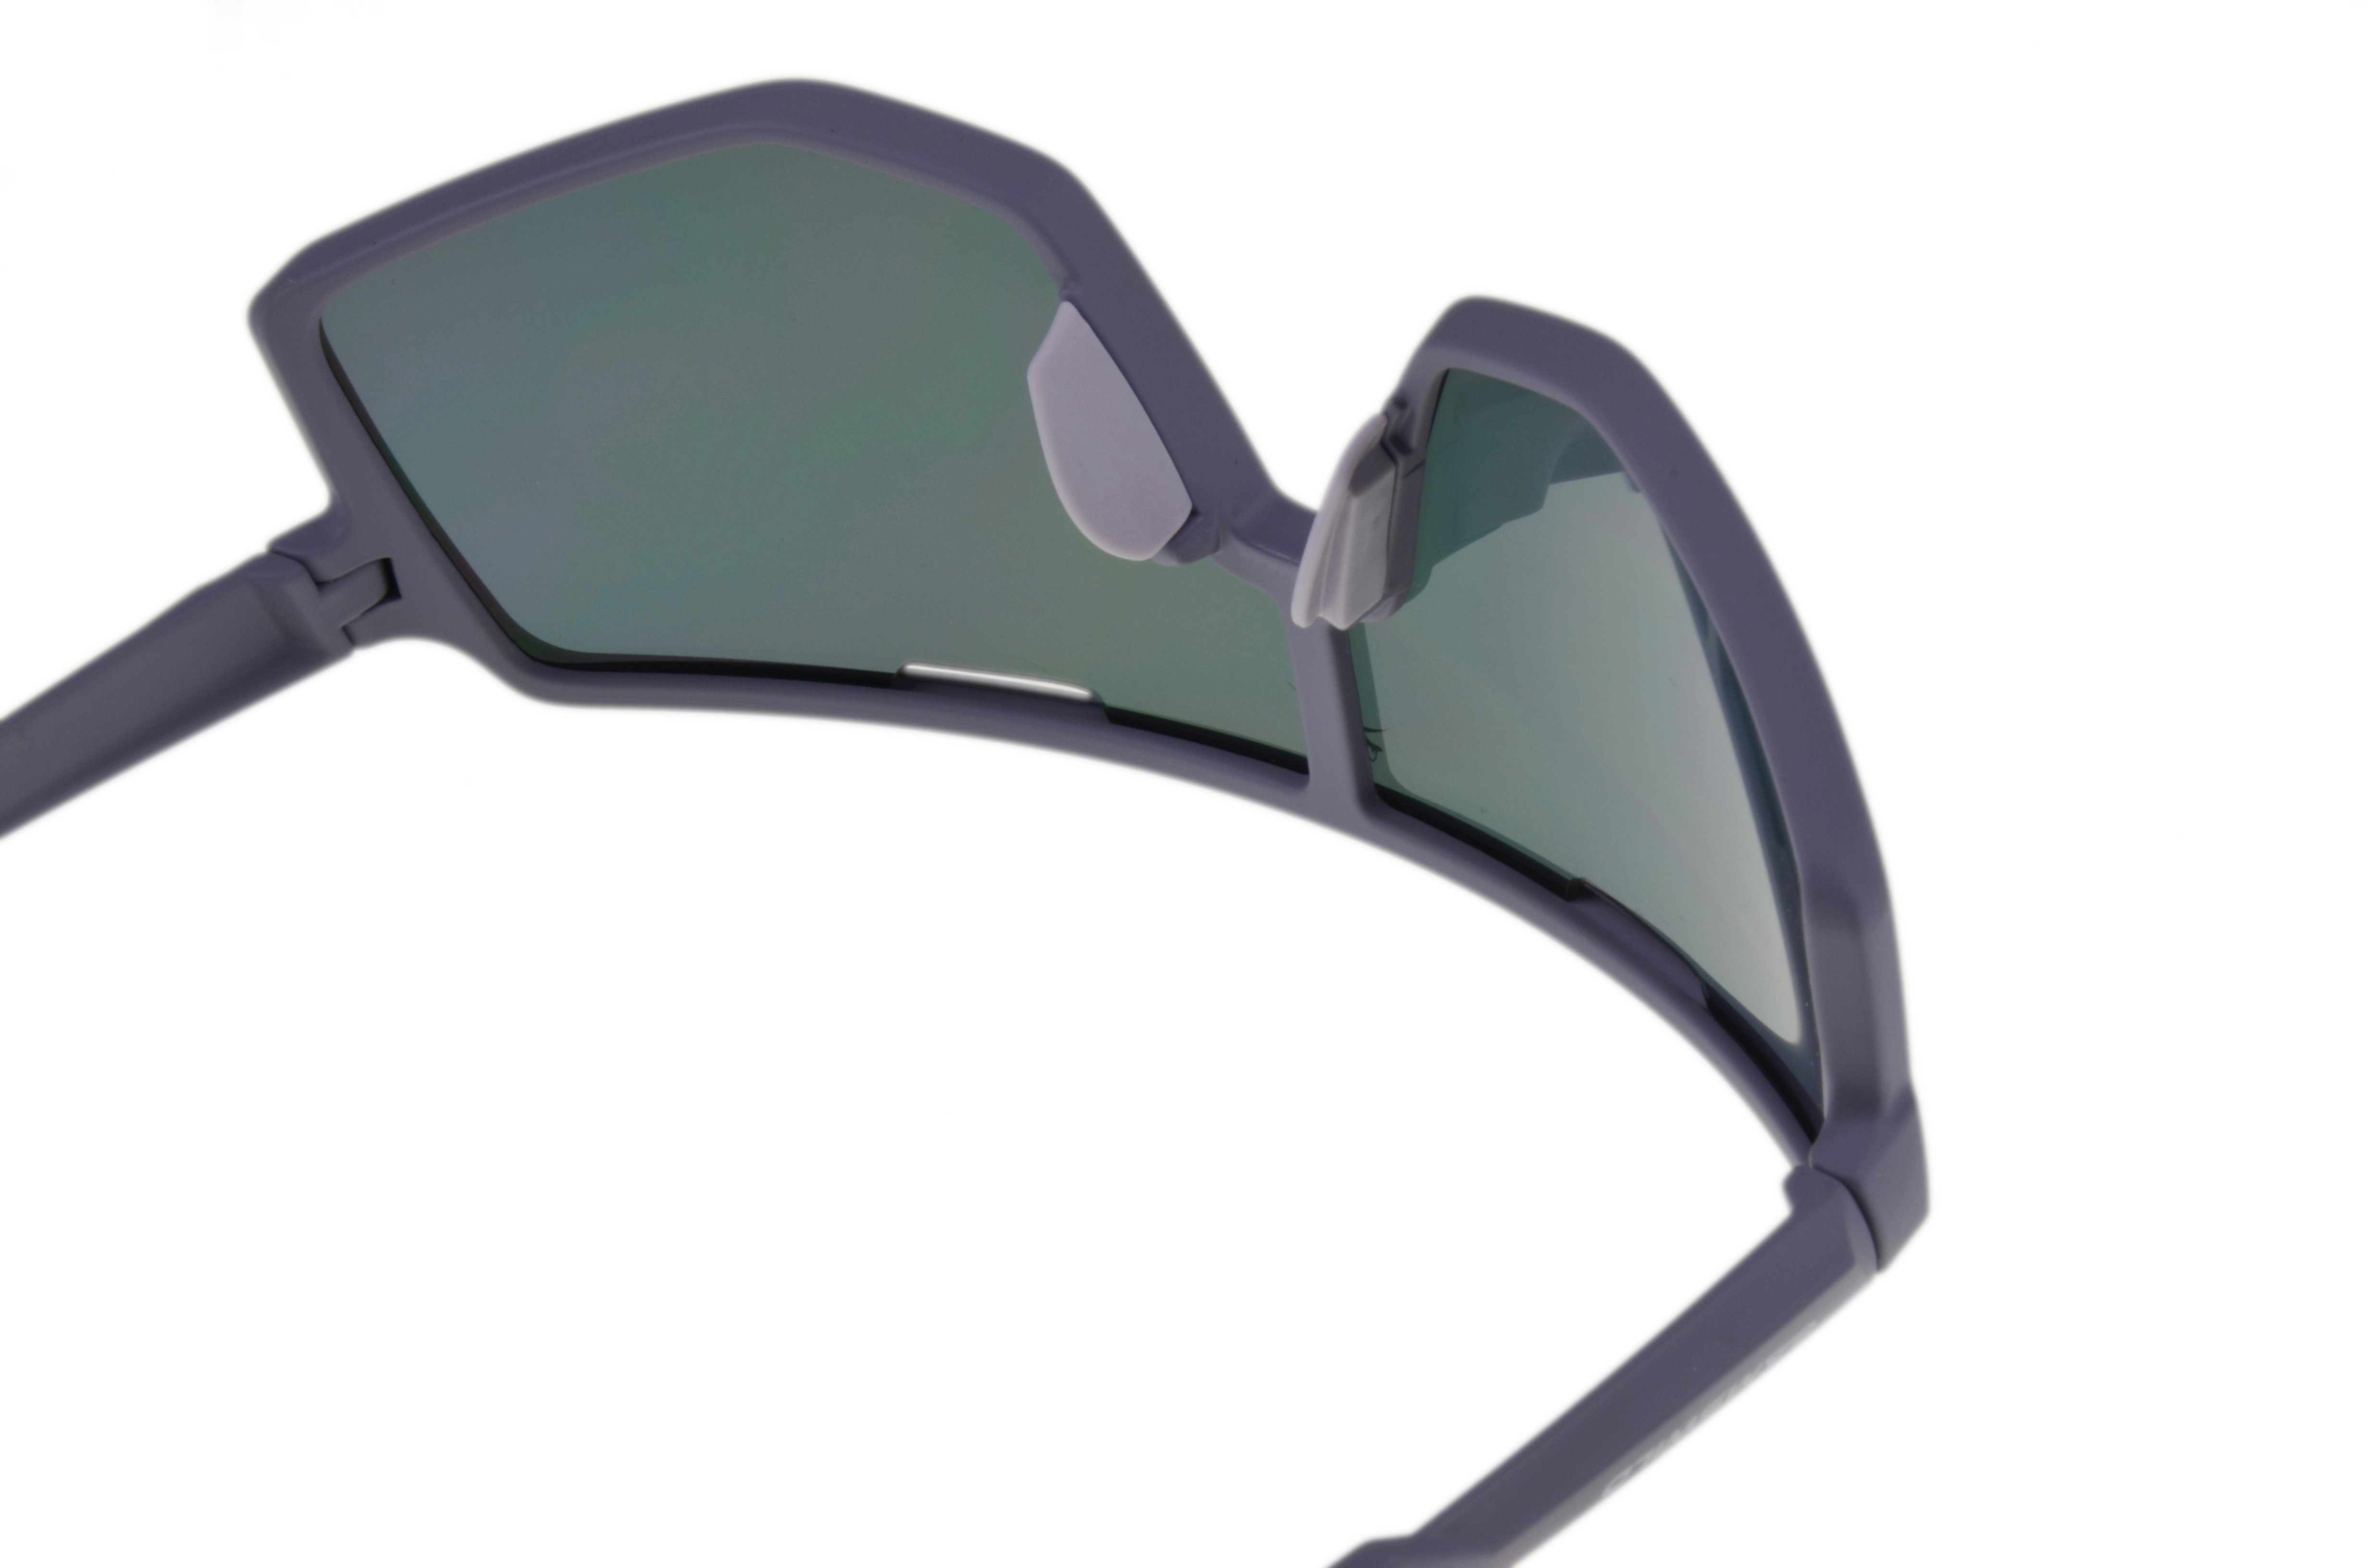 Gamswild Sonnenbrille WS4042 Sonnenbrille schwarz-blau, Unisex Skibrille Fahrradbrille lila, Herren Damen TR90 schwarz-rot, Unisex, grün